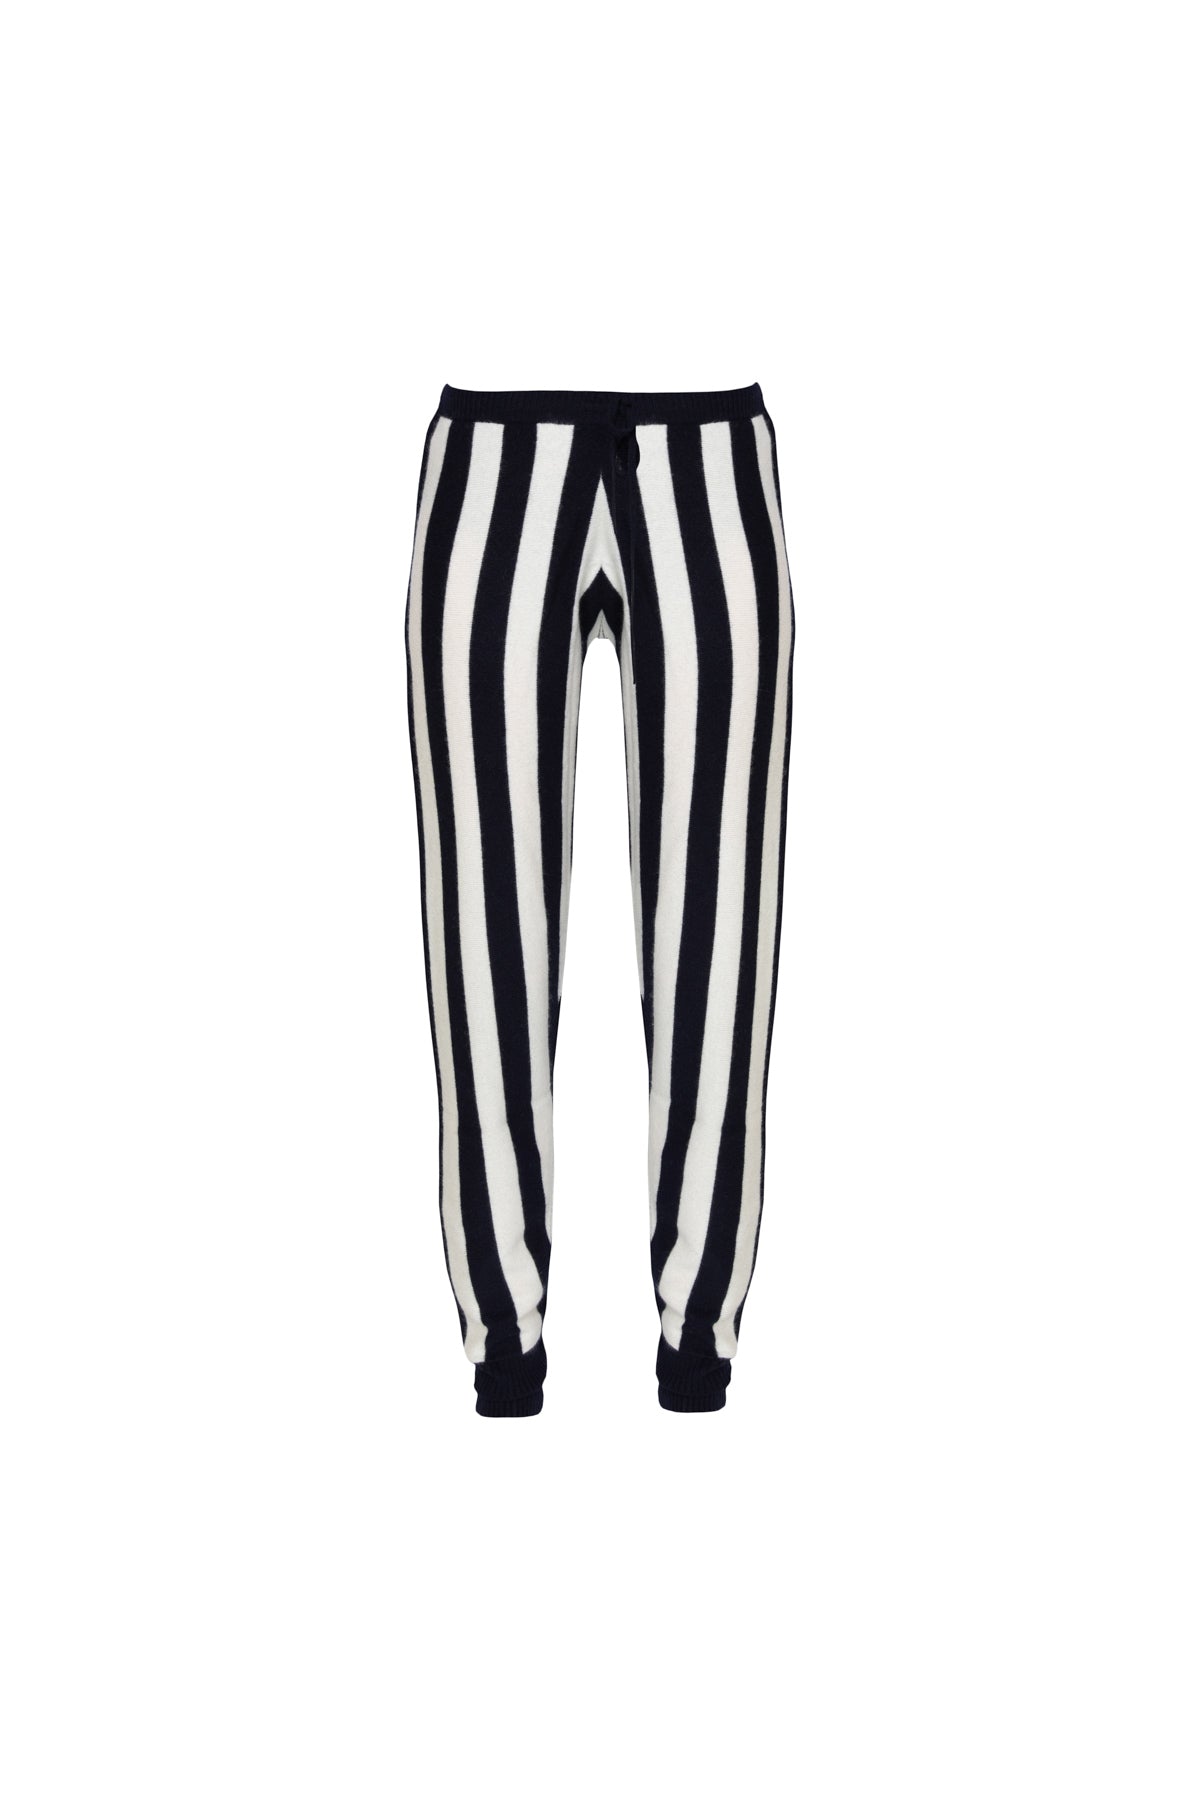 Leonis Black & White Stripe Cashmere Trouser